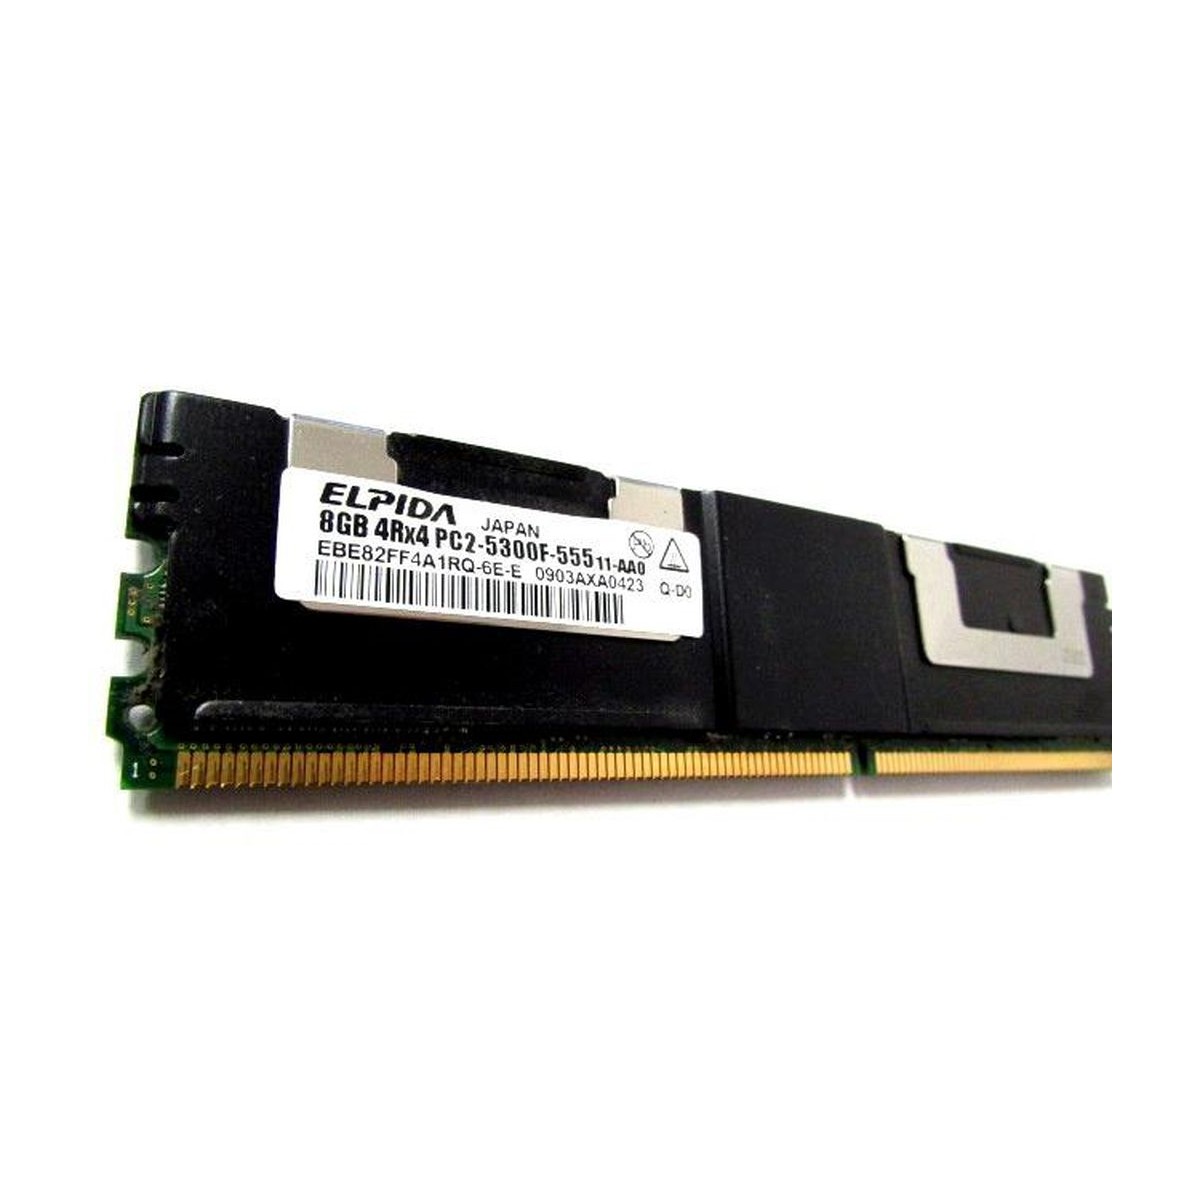 ELPIDA 8GB 4Rx4 PC2-5300F-555 FB DIMM EBE82FF4A1R